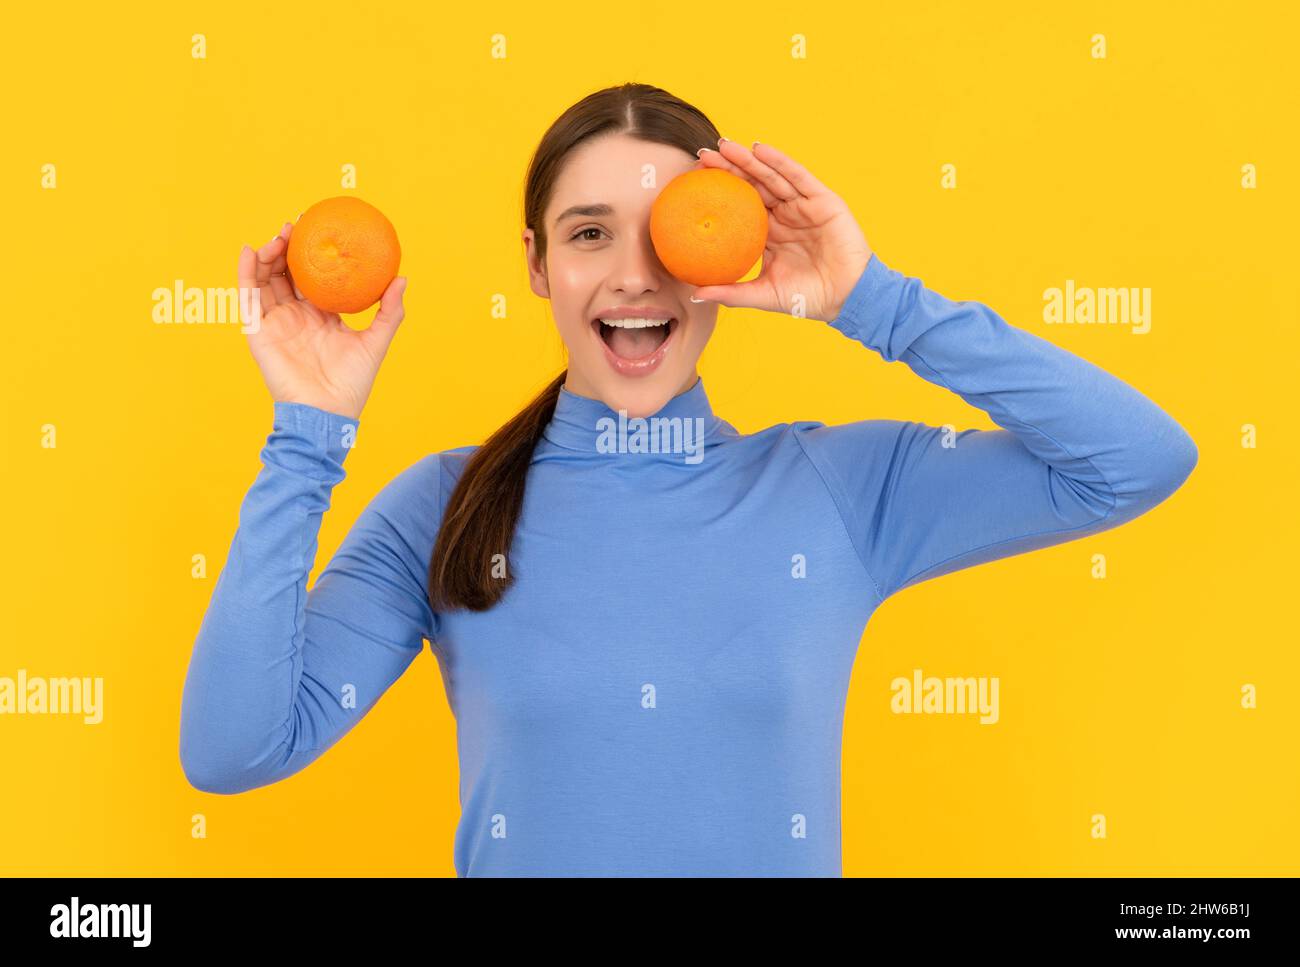 amazed young woman holding orange citrus fruit on yellow background, health Stock Photo